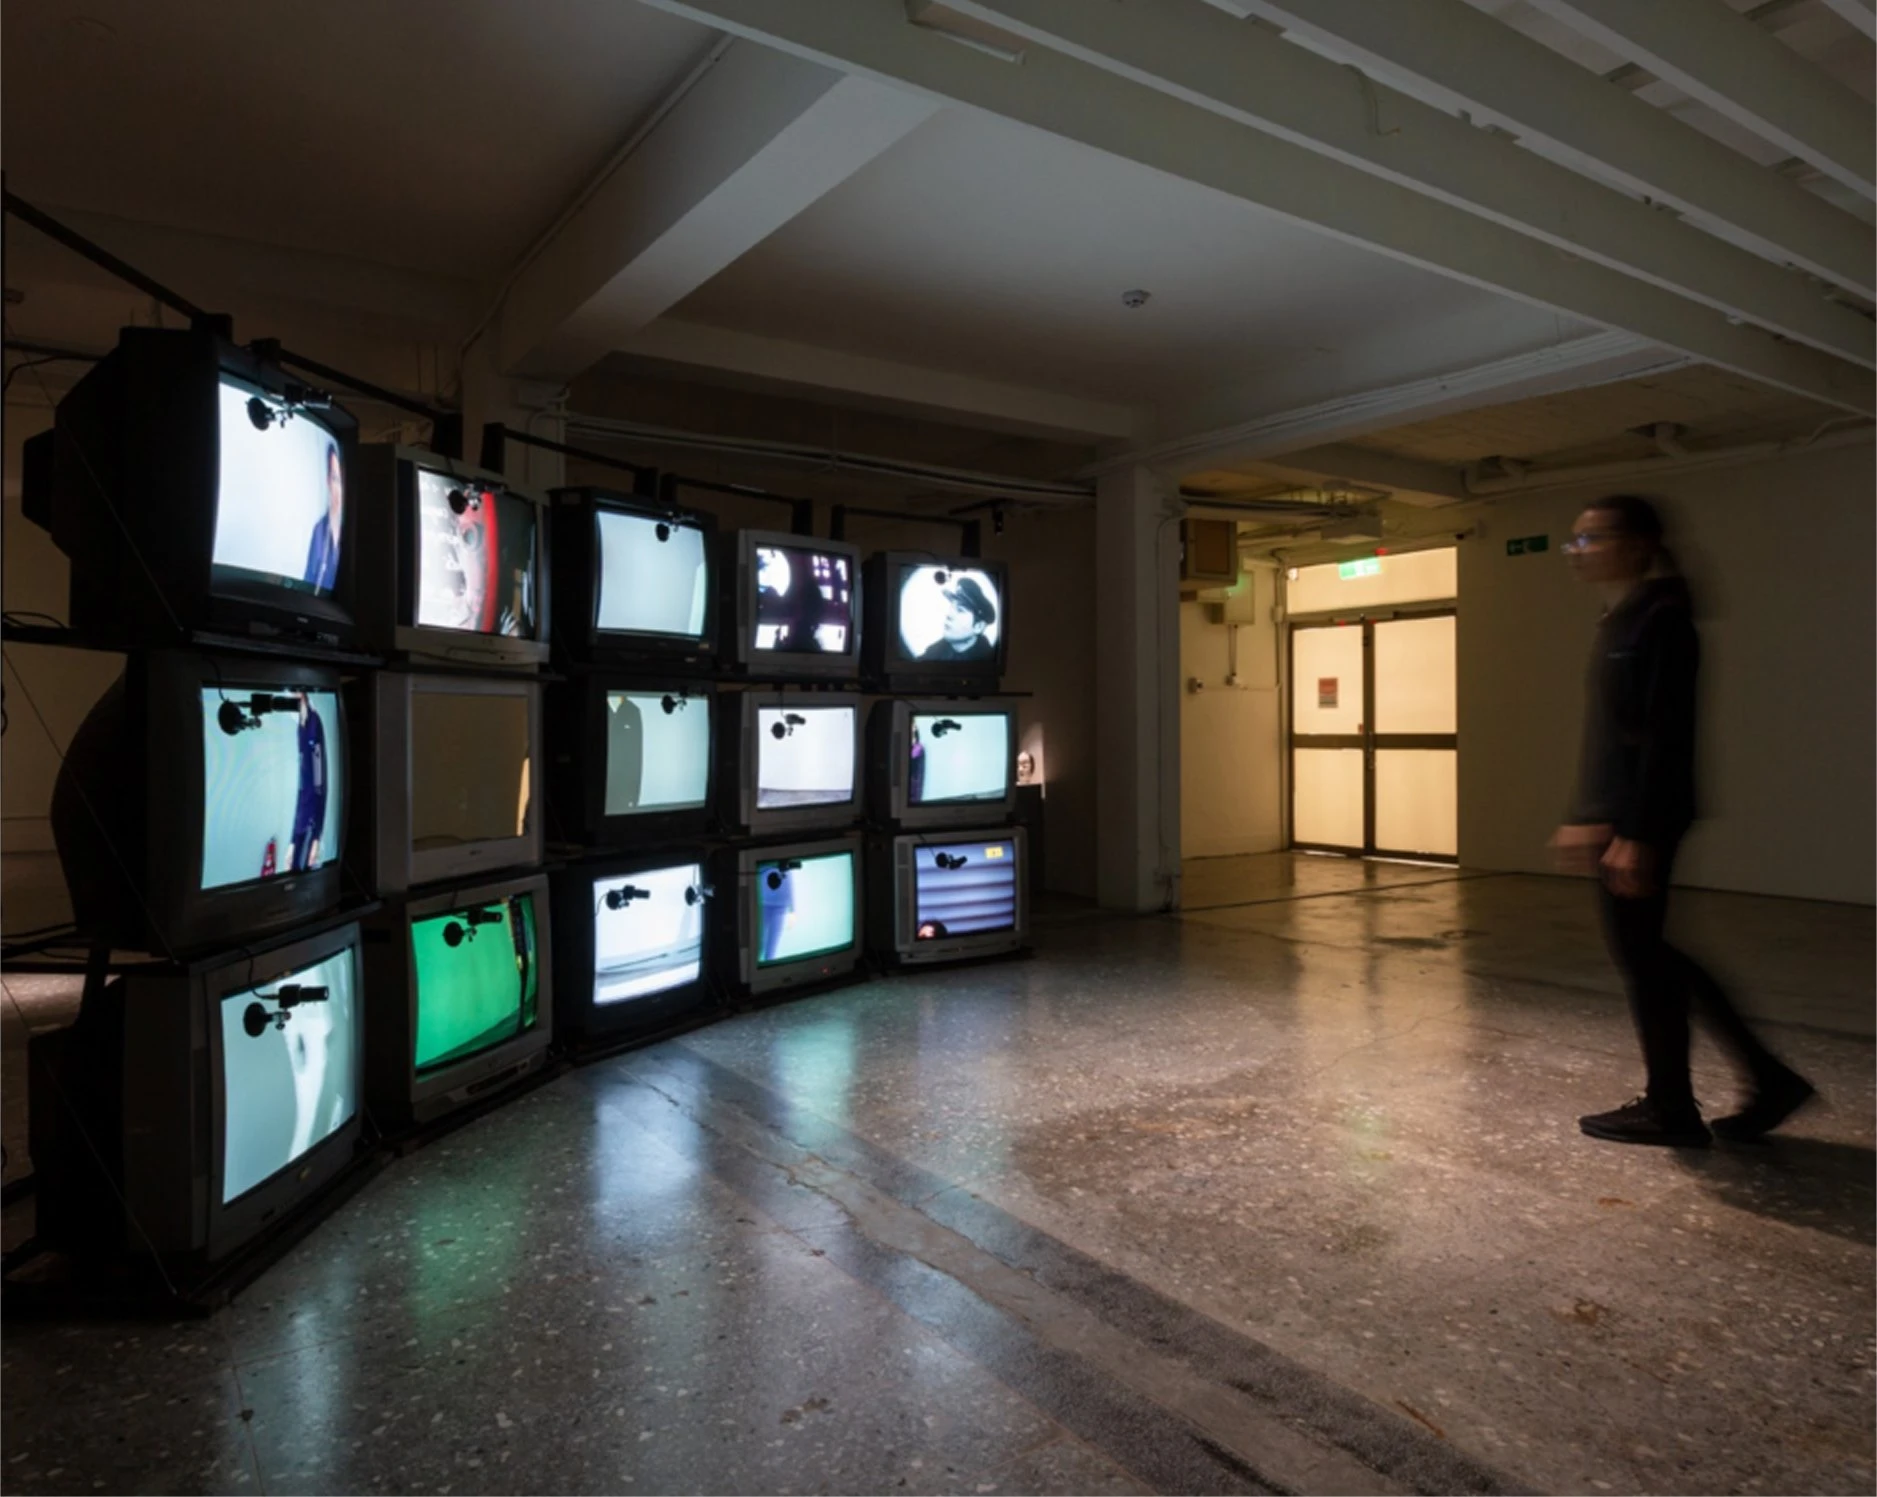 《迷宮中的誰》，2018，投影機、鏡子、動力結構、網路攝影機，「再基地：當實驗成為態度」於台灣當代文化實驗場展場一景；李基宏攝影-圖片